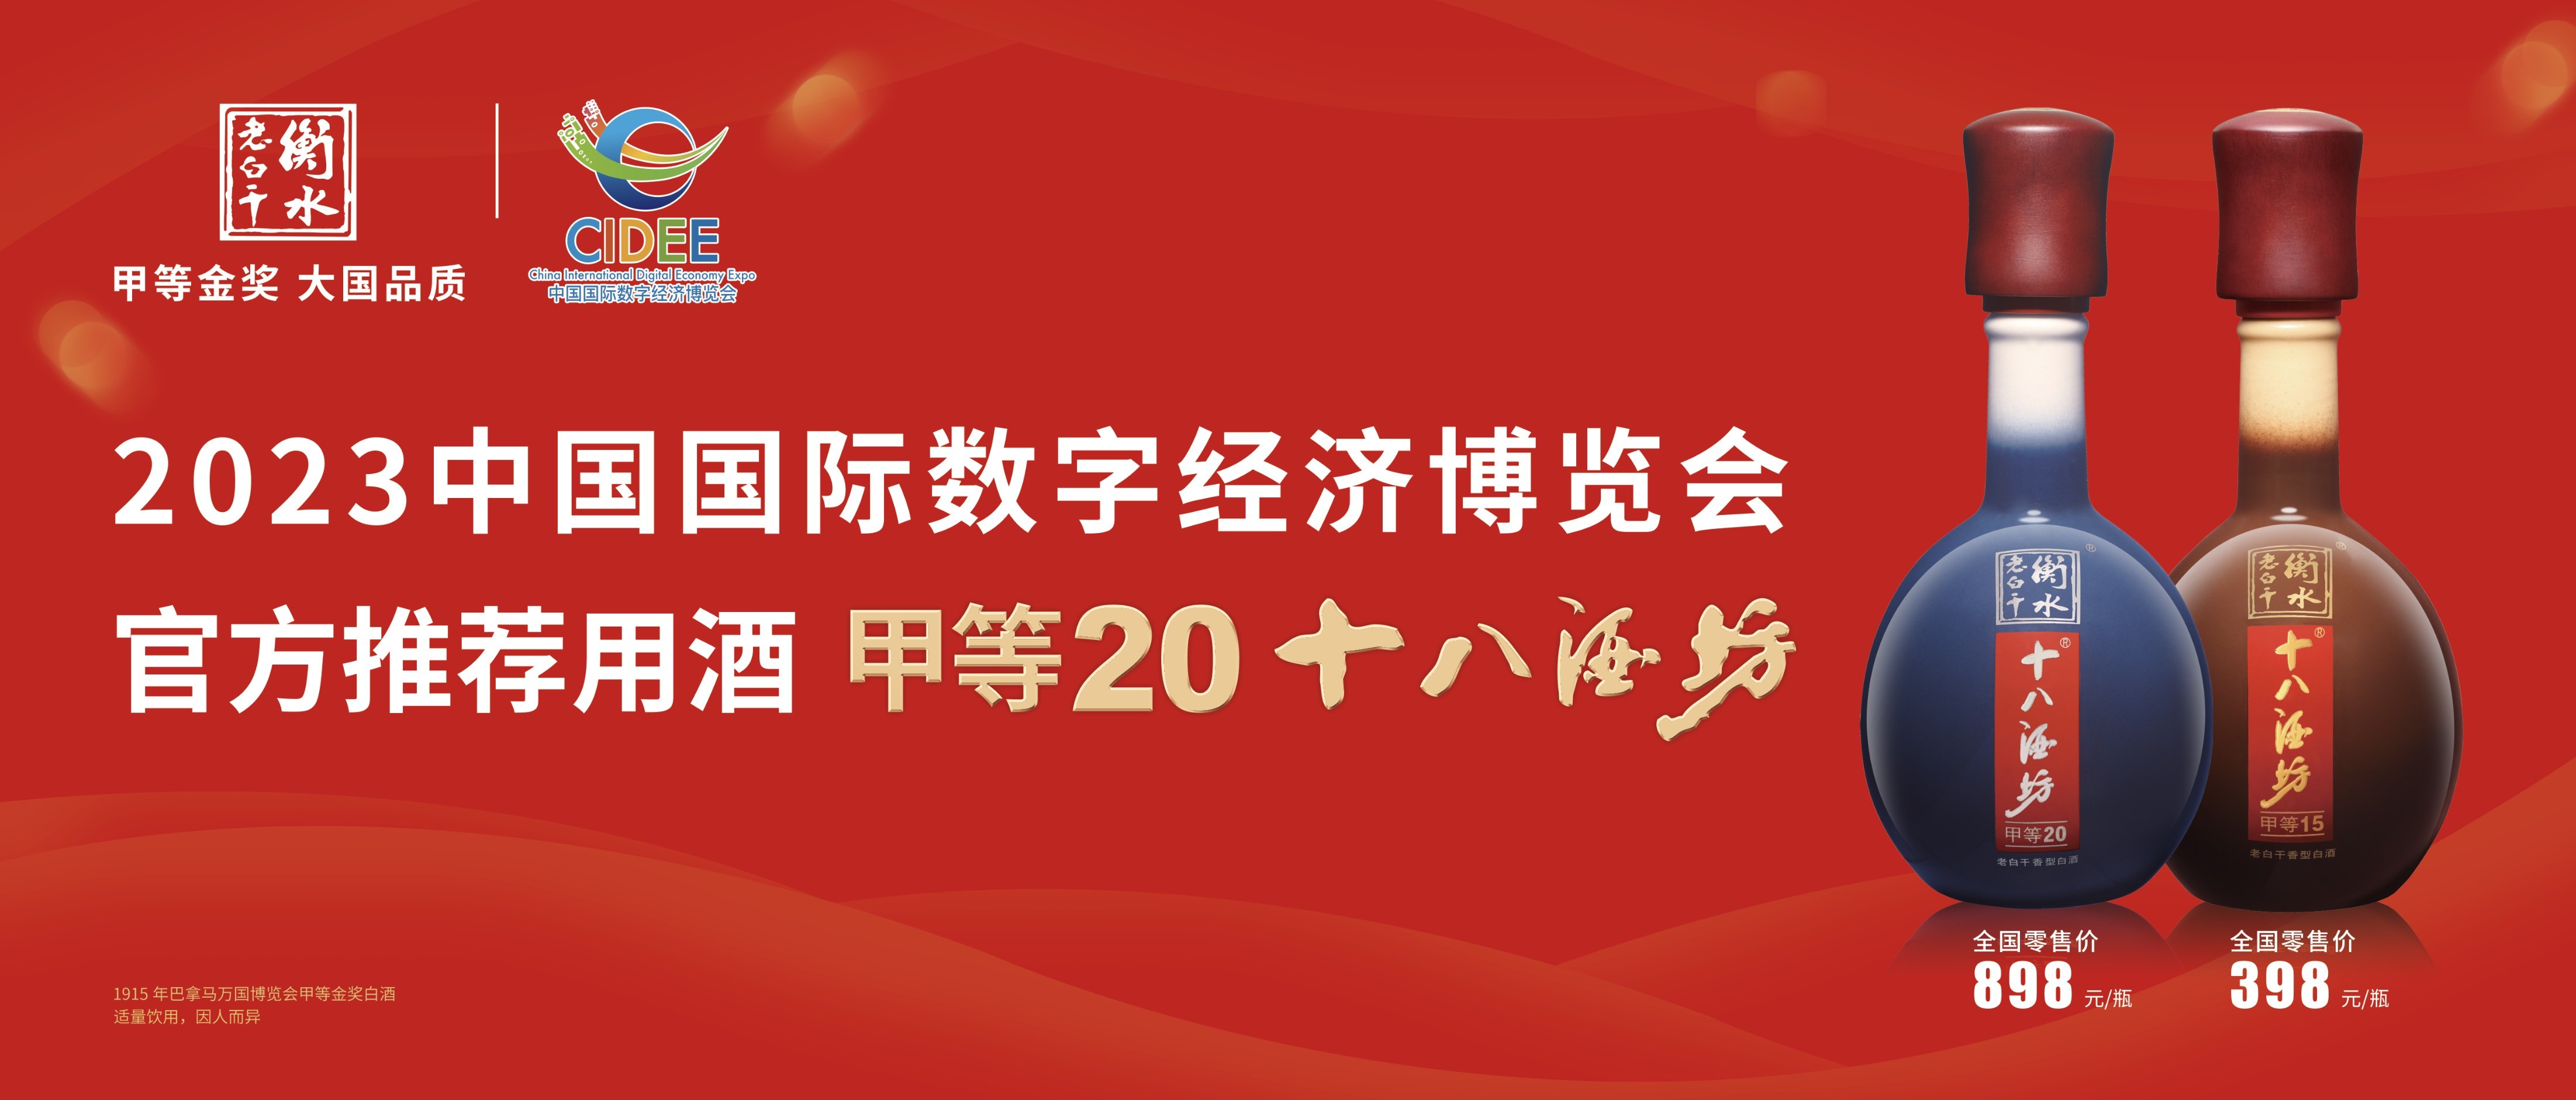 2023中国国际数字经济博览会开幕 衡水